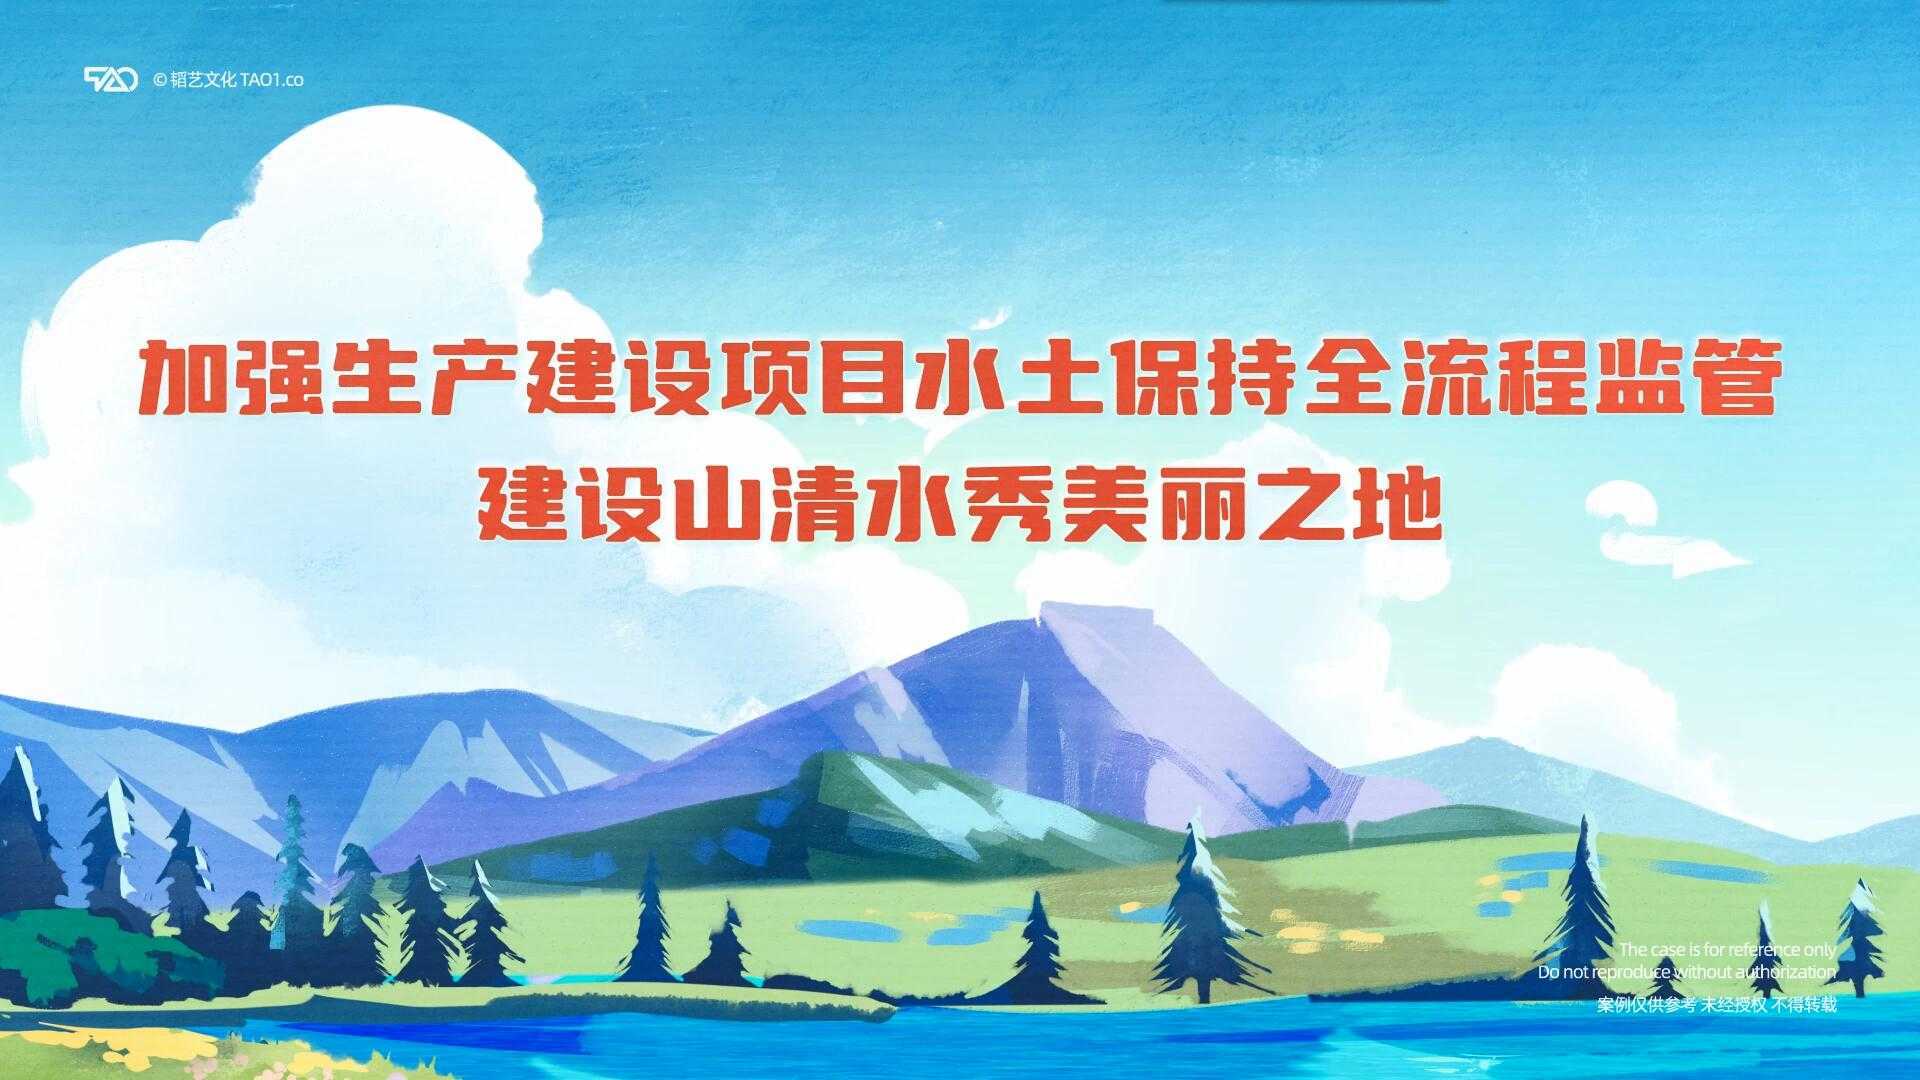 [原创动画制作]重庆水利局 生产建设项目水土保持全流程监管宣传 微视频